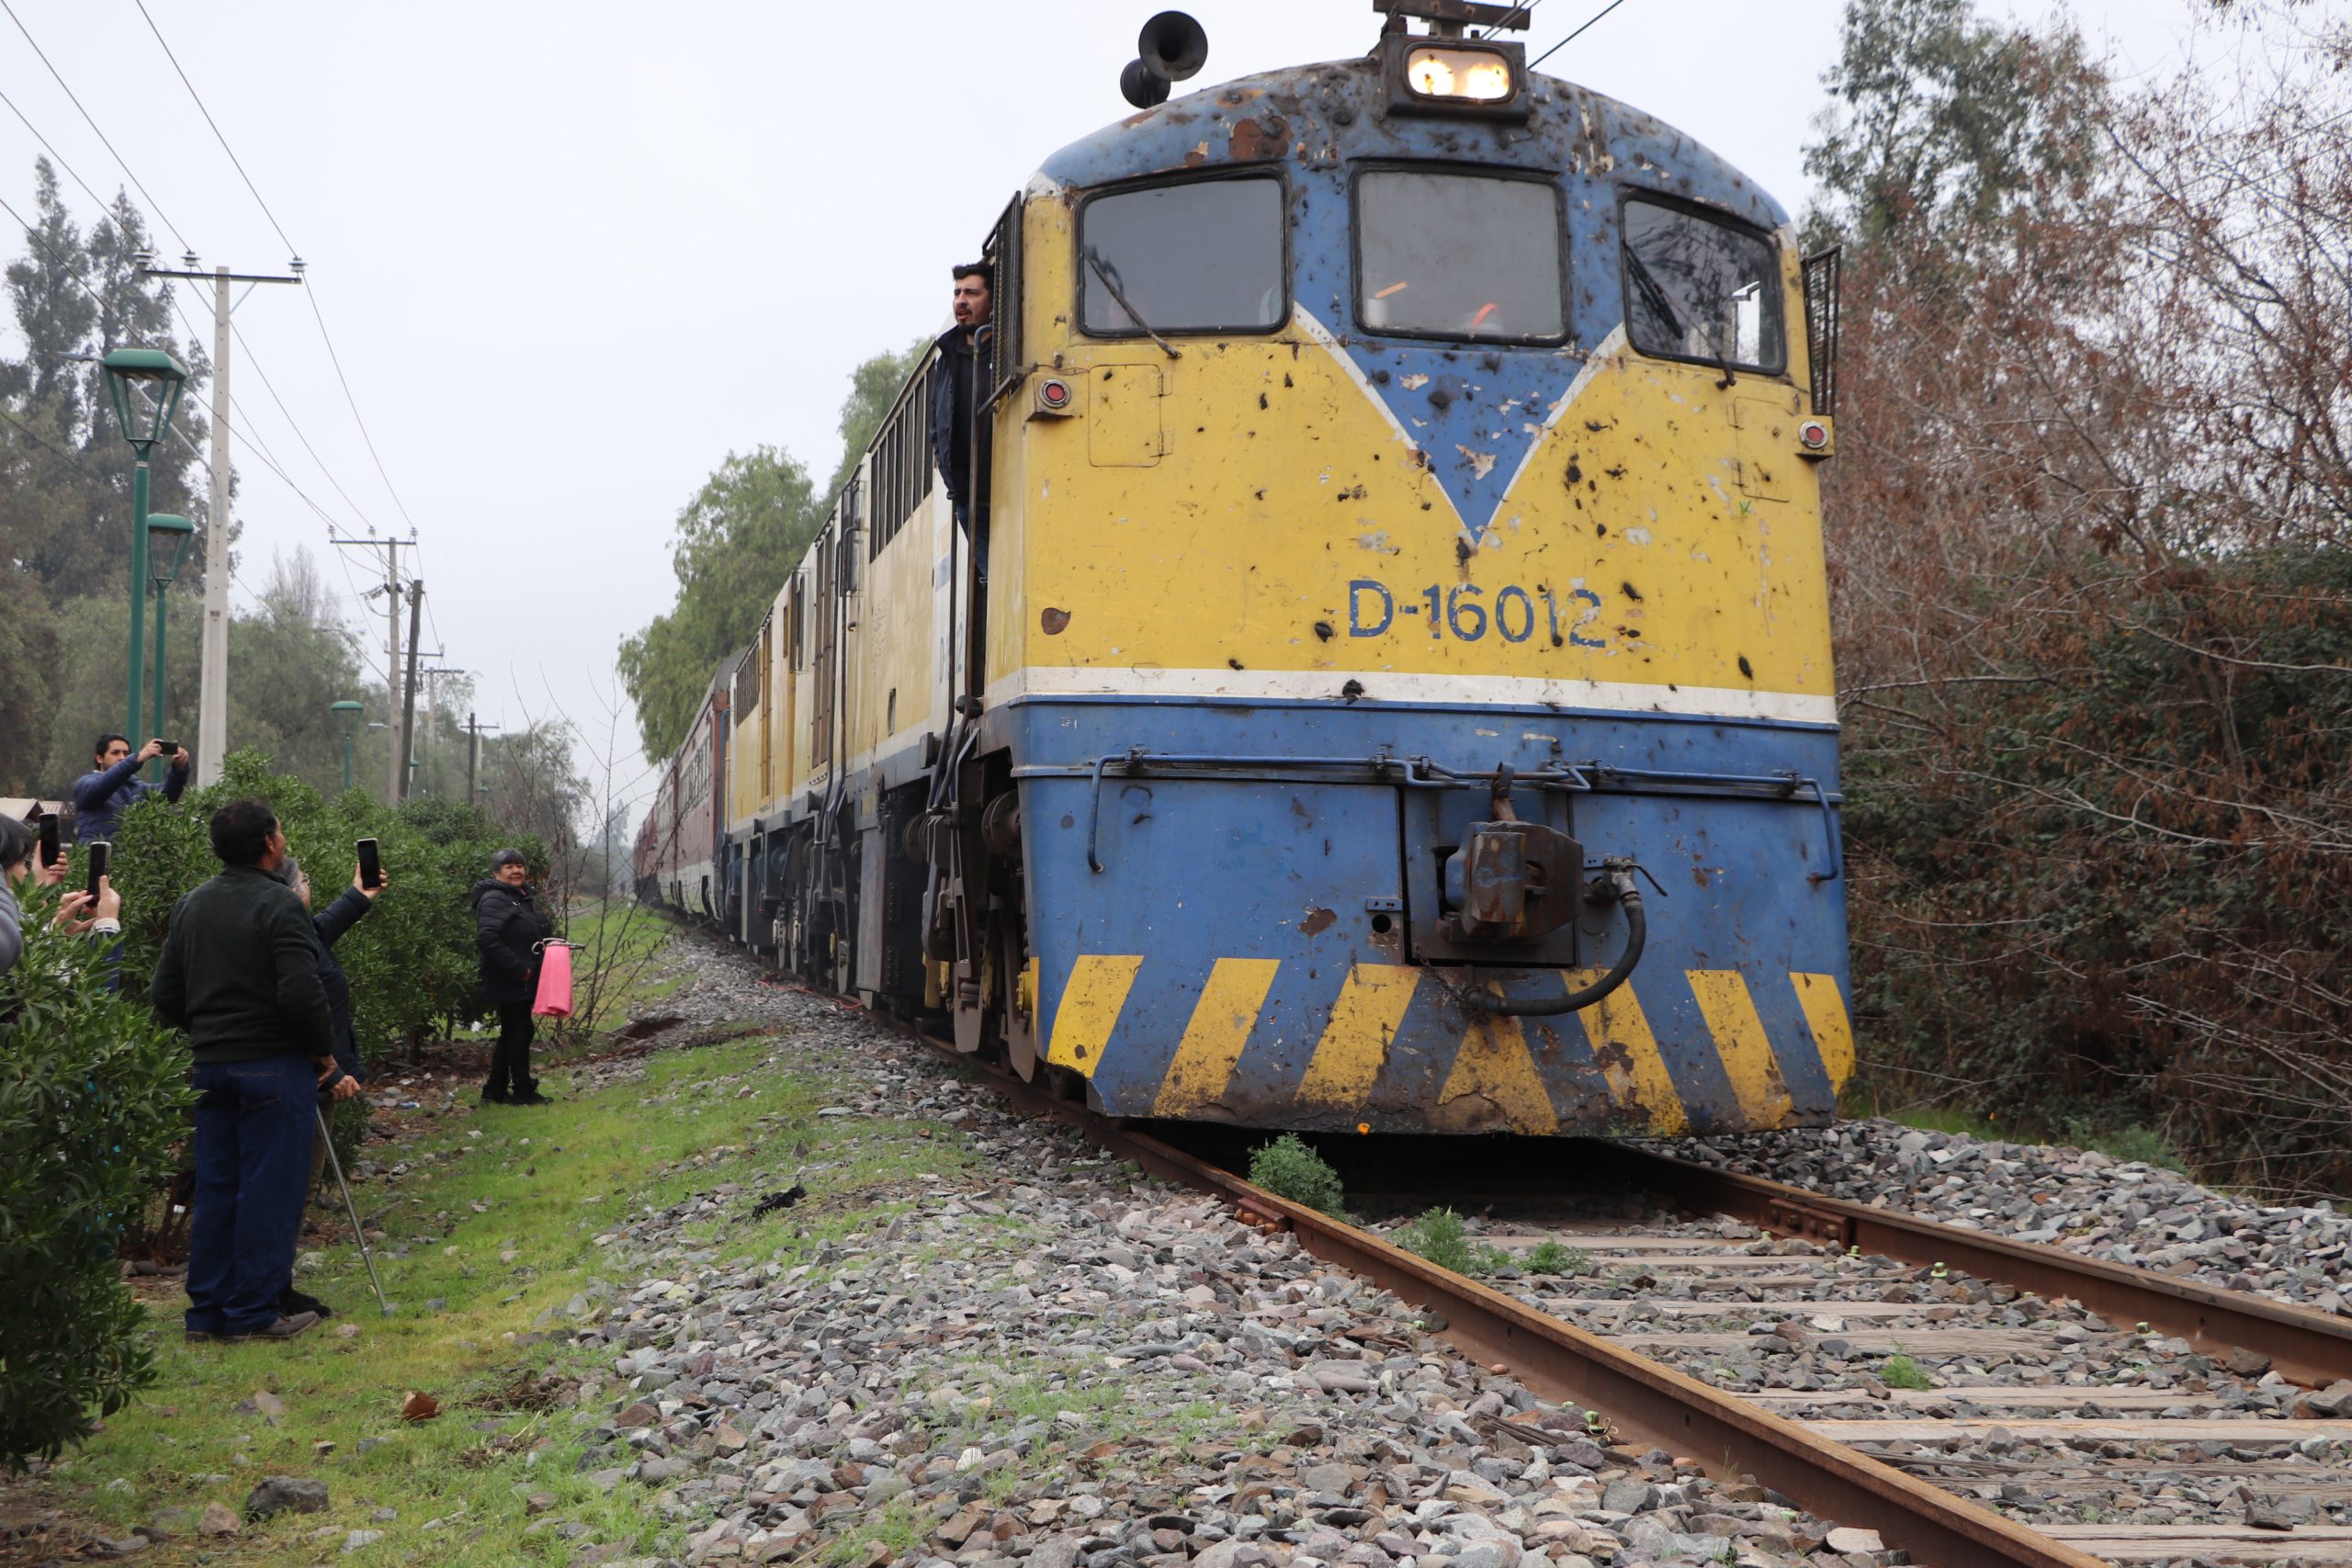 PANQUEHUE: Vuelve el tren del recuerdo a la comuna de Panquehue